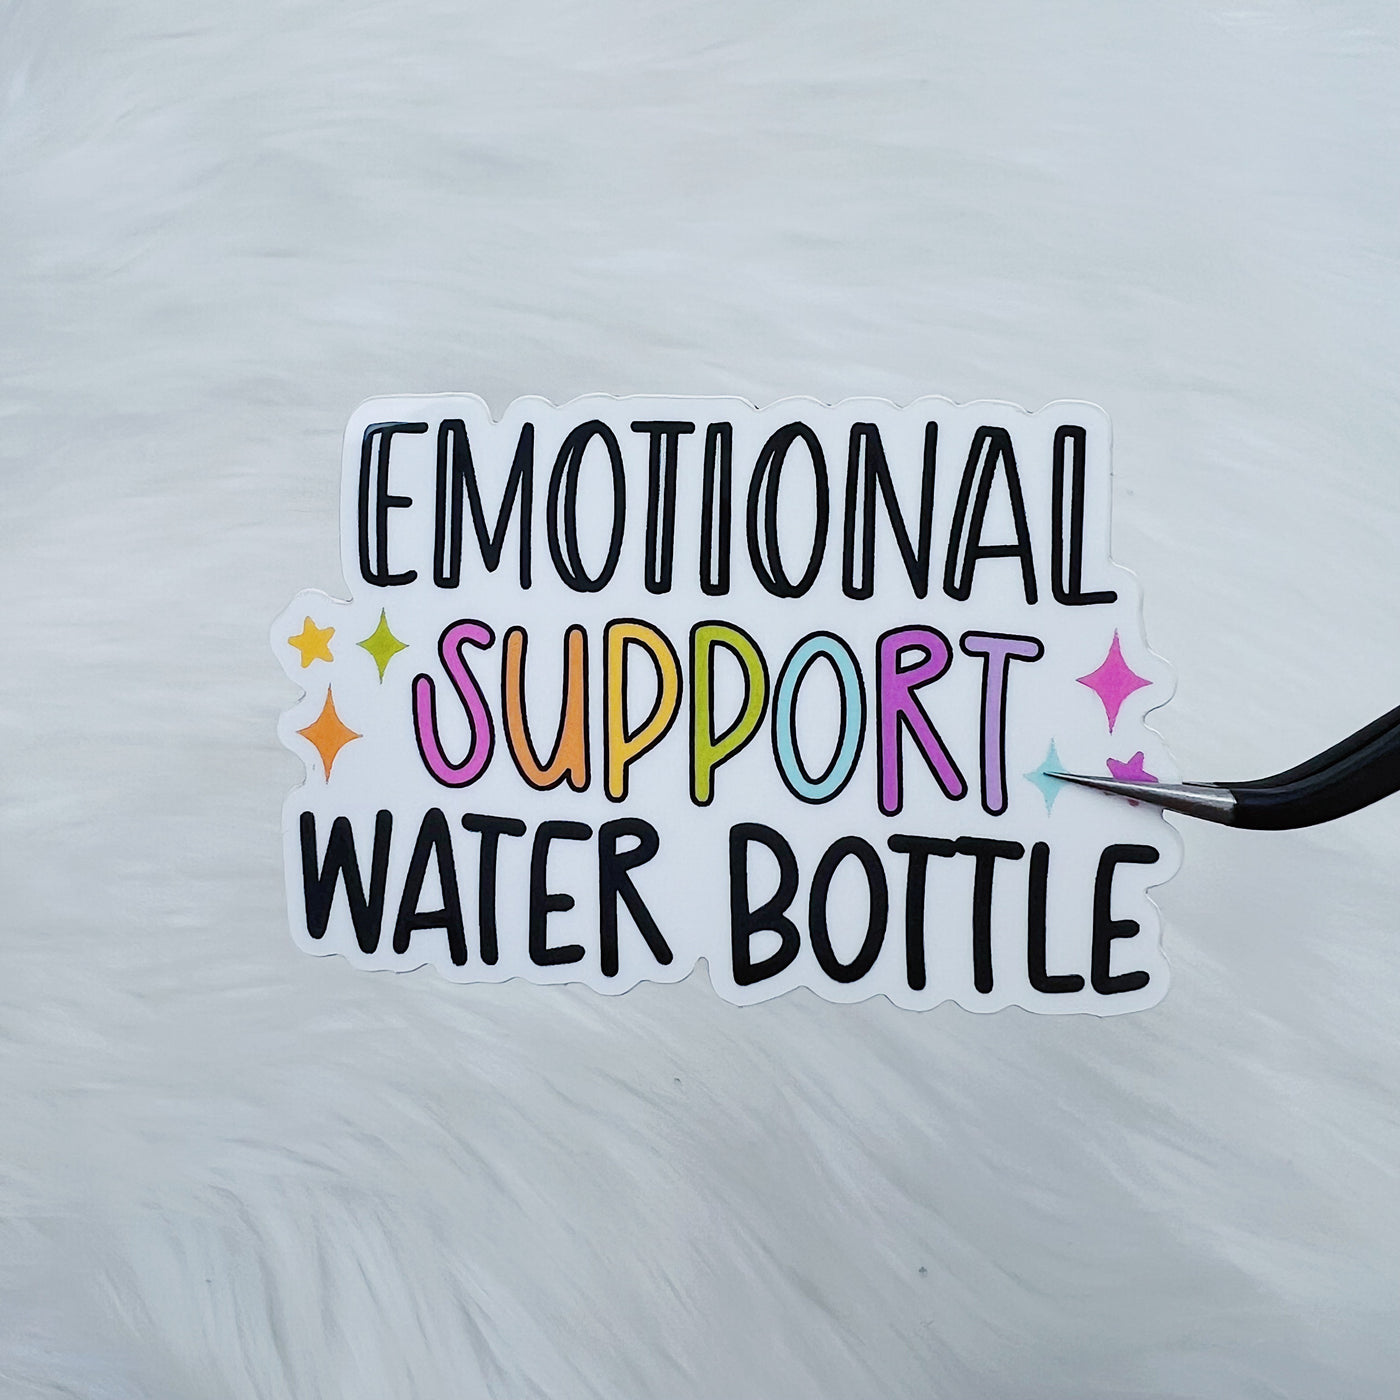 Emotional Support Water Bottle Vinyl Sticker Die Cut